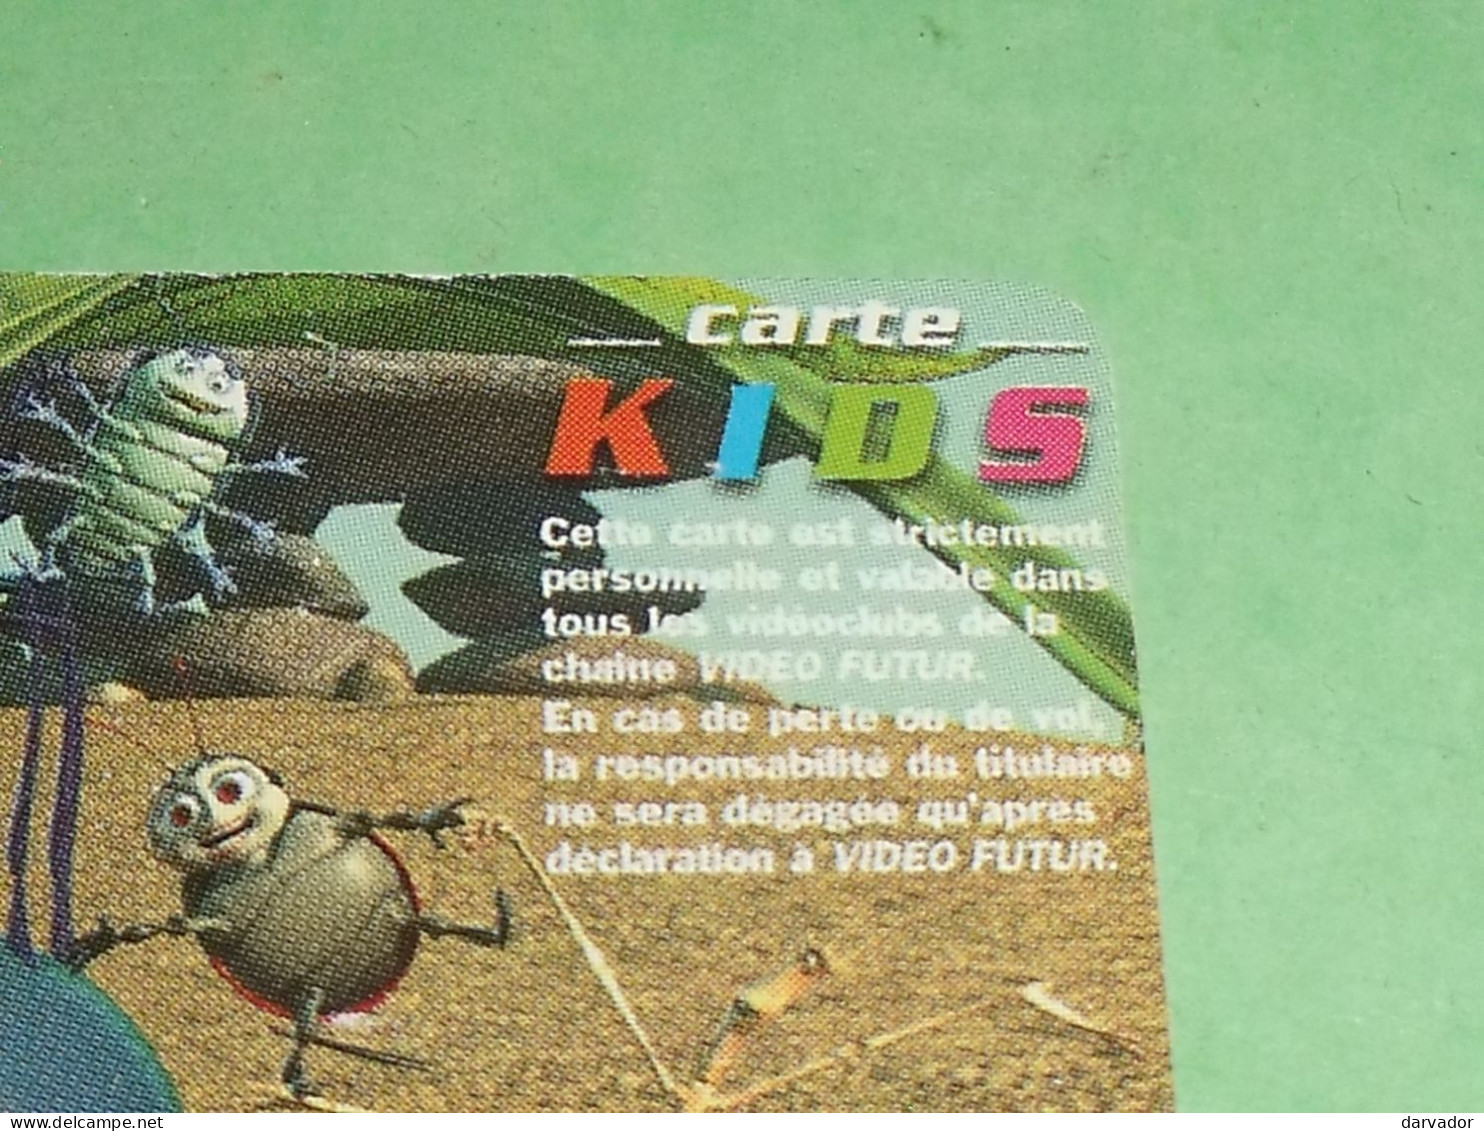 TL6 / Carte Vidéo Futur / Carte Kid N°4 / 1001 Pattes : SUPERBE ( Dans Tous Les Videoclubs De La Chaine VIDEO FUTUR ) - Video Futur